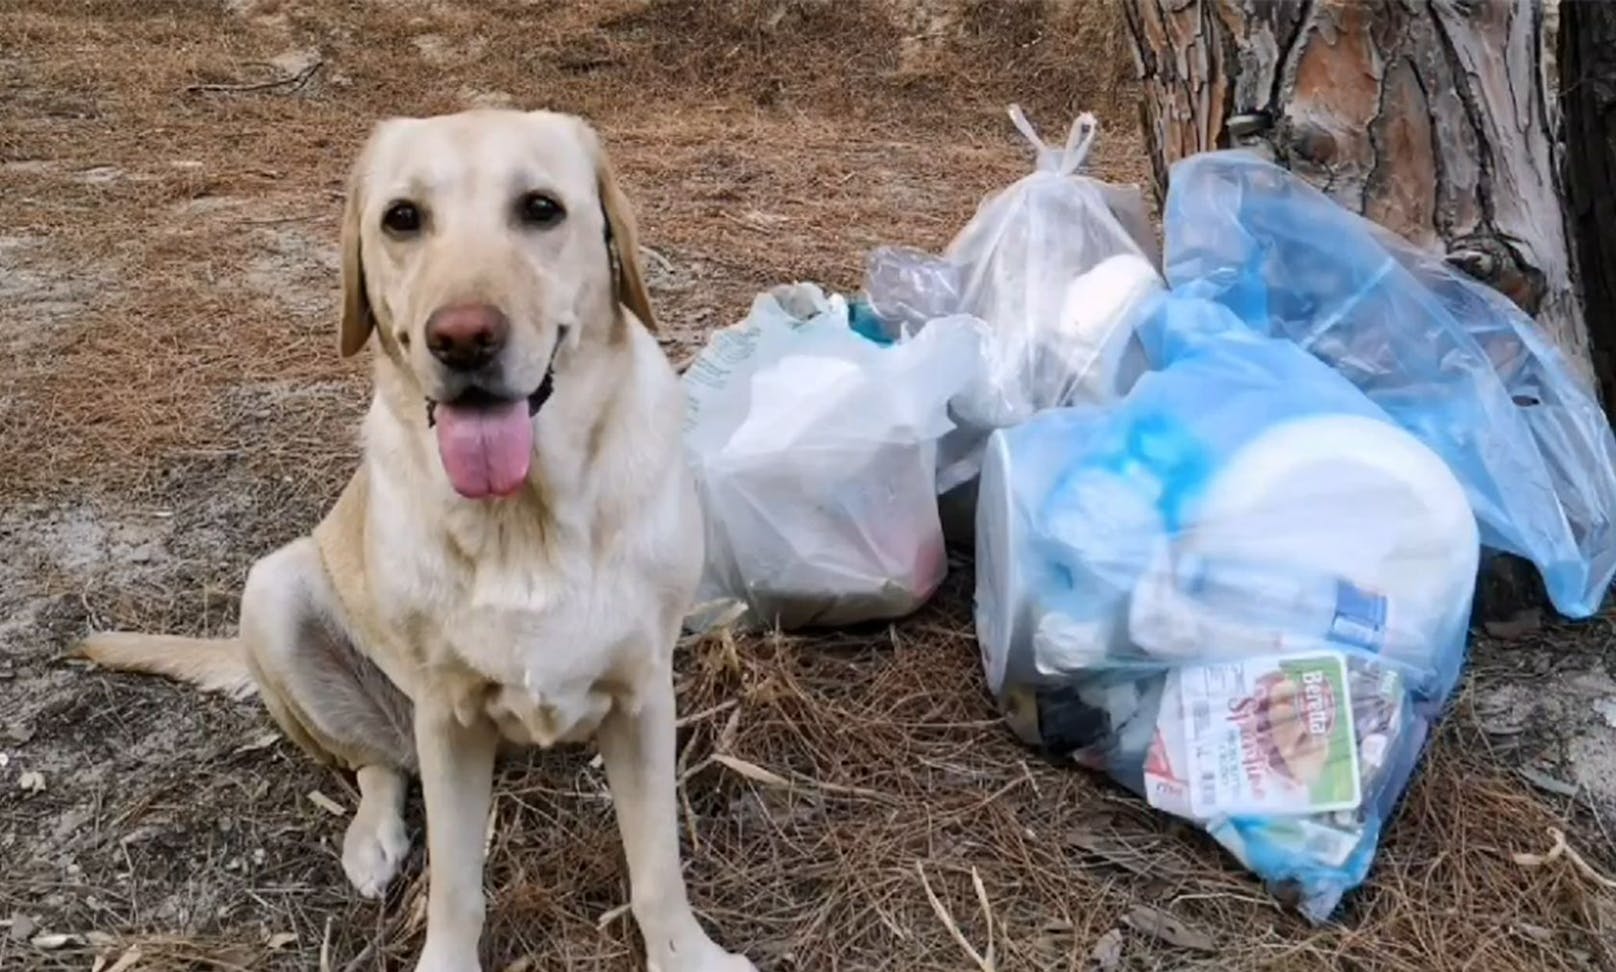 Müll im Sand – so reagiert dieser Hund darauf